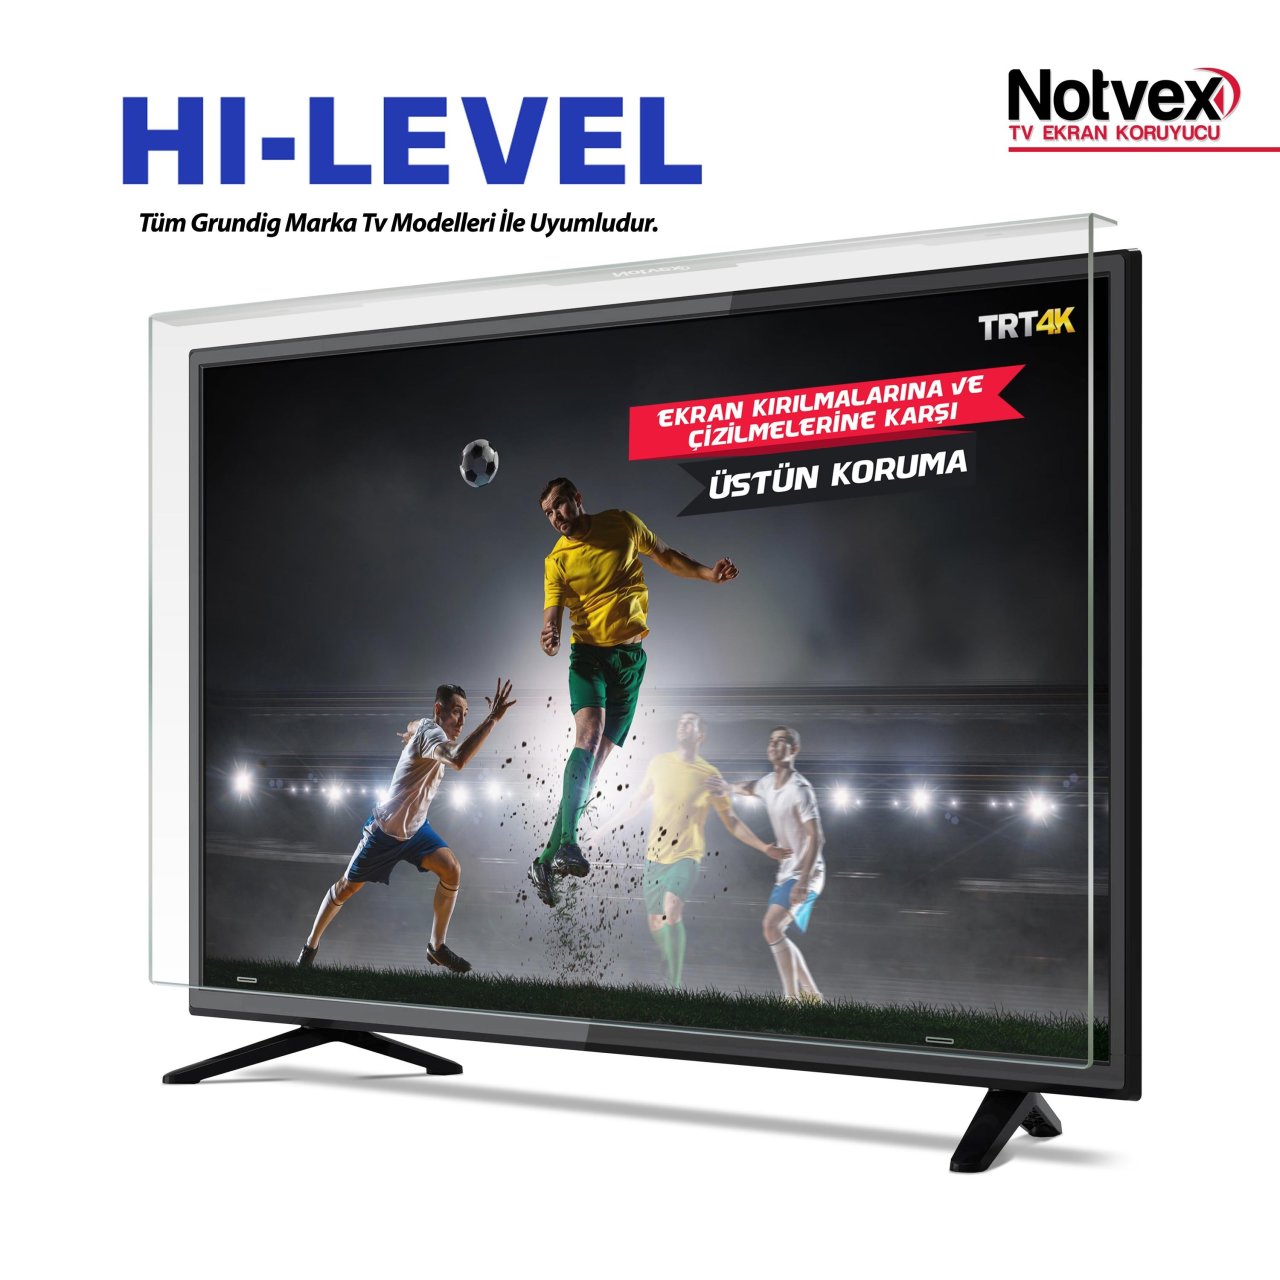 Hi-Level 55HL690 Uyumlu TV Ekran Koruyucu